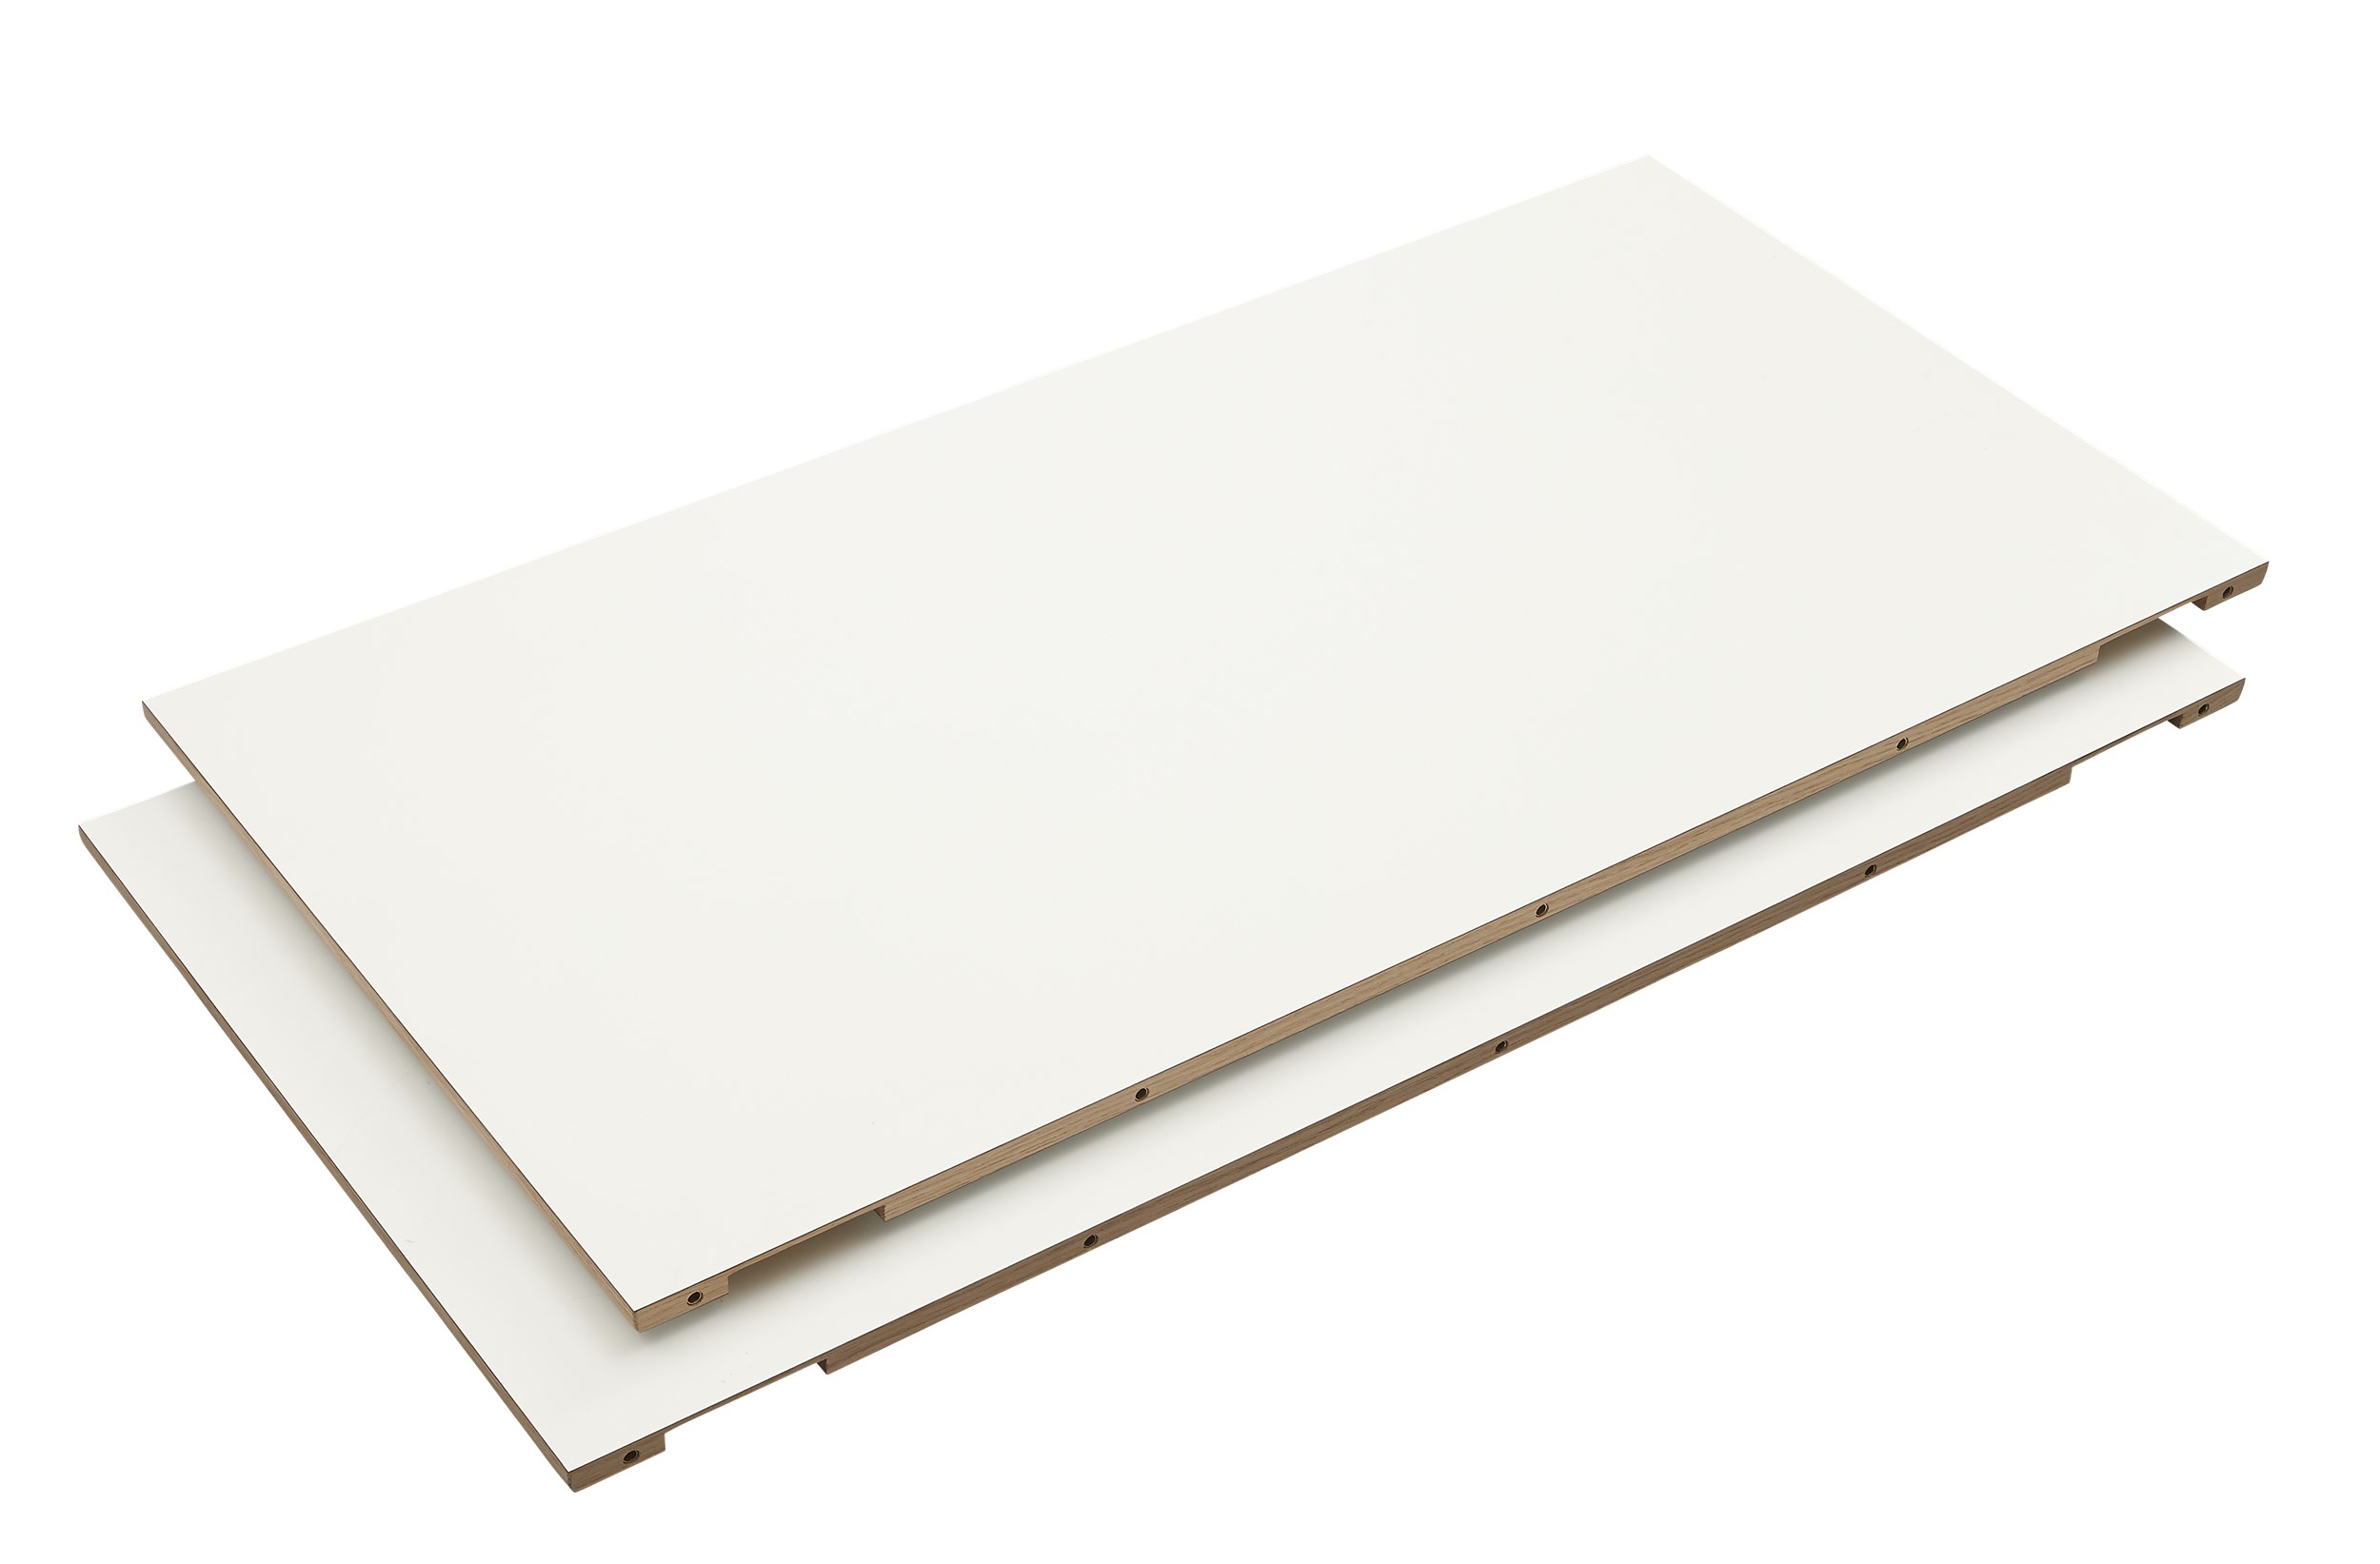 Big Tillægsplade 51 x 1.5 x 100 cm - 101 White højtrykslaminat, kant i hvidpigmenteret matlakeret eg og 2 stk.